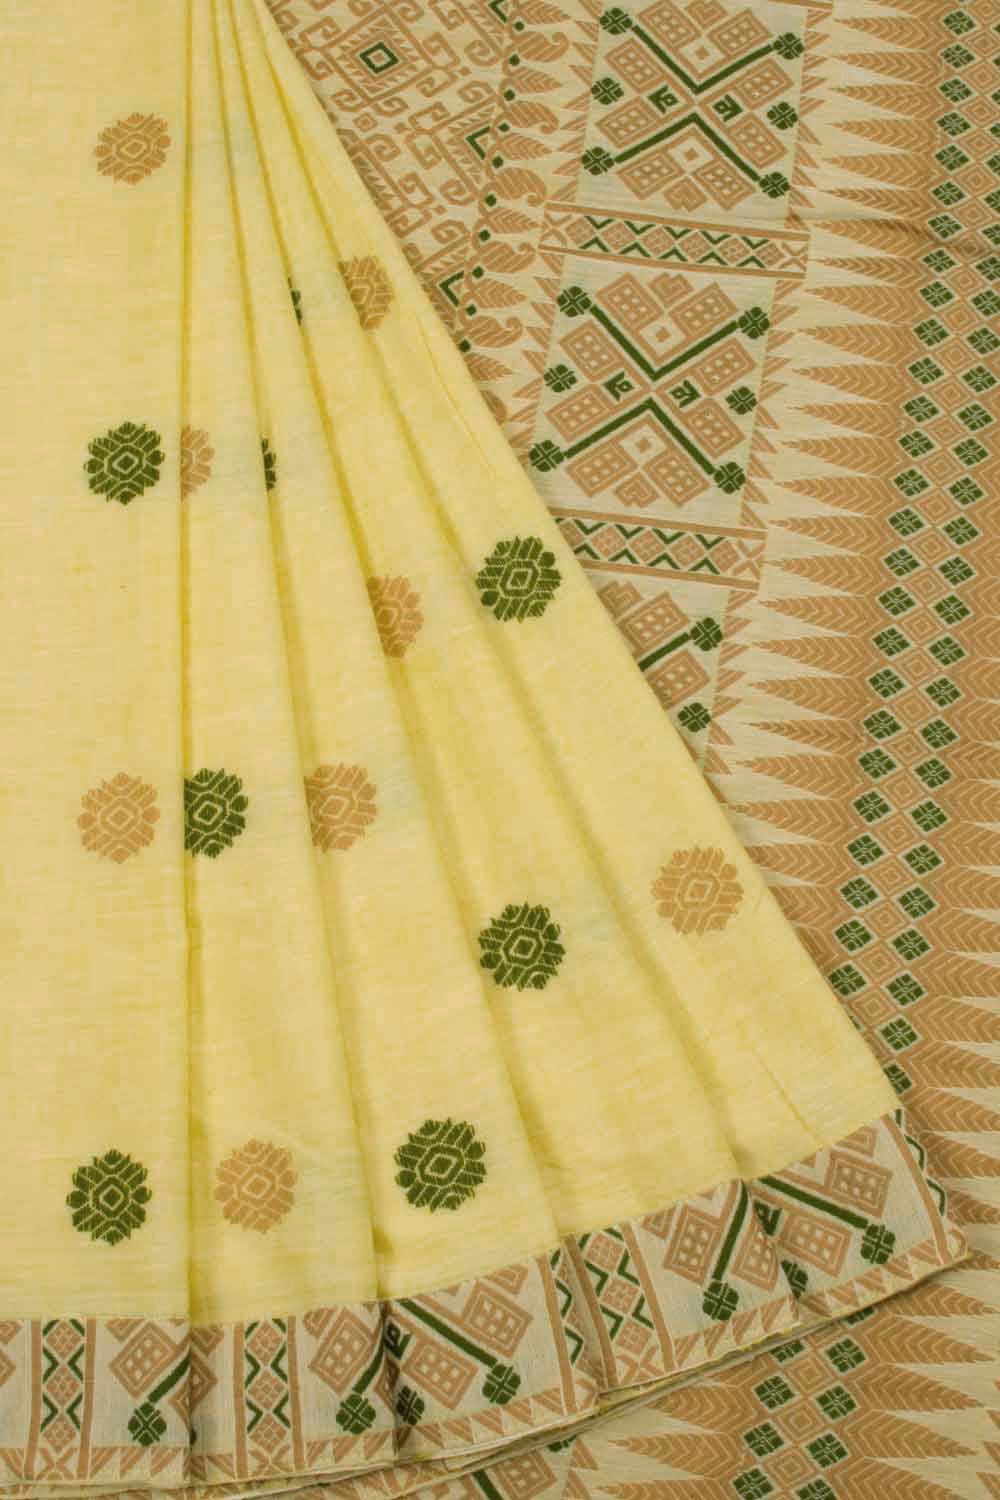 Assam Silk Cotton Saree beige yellow